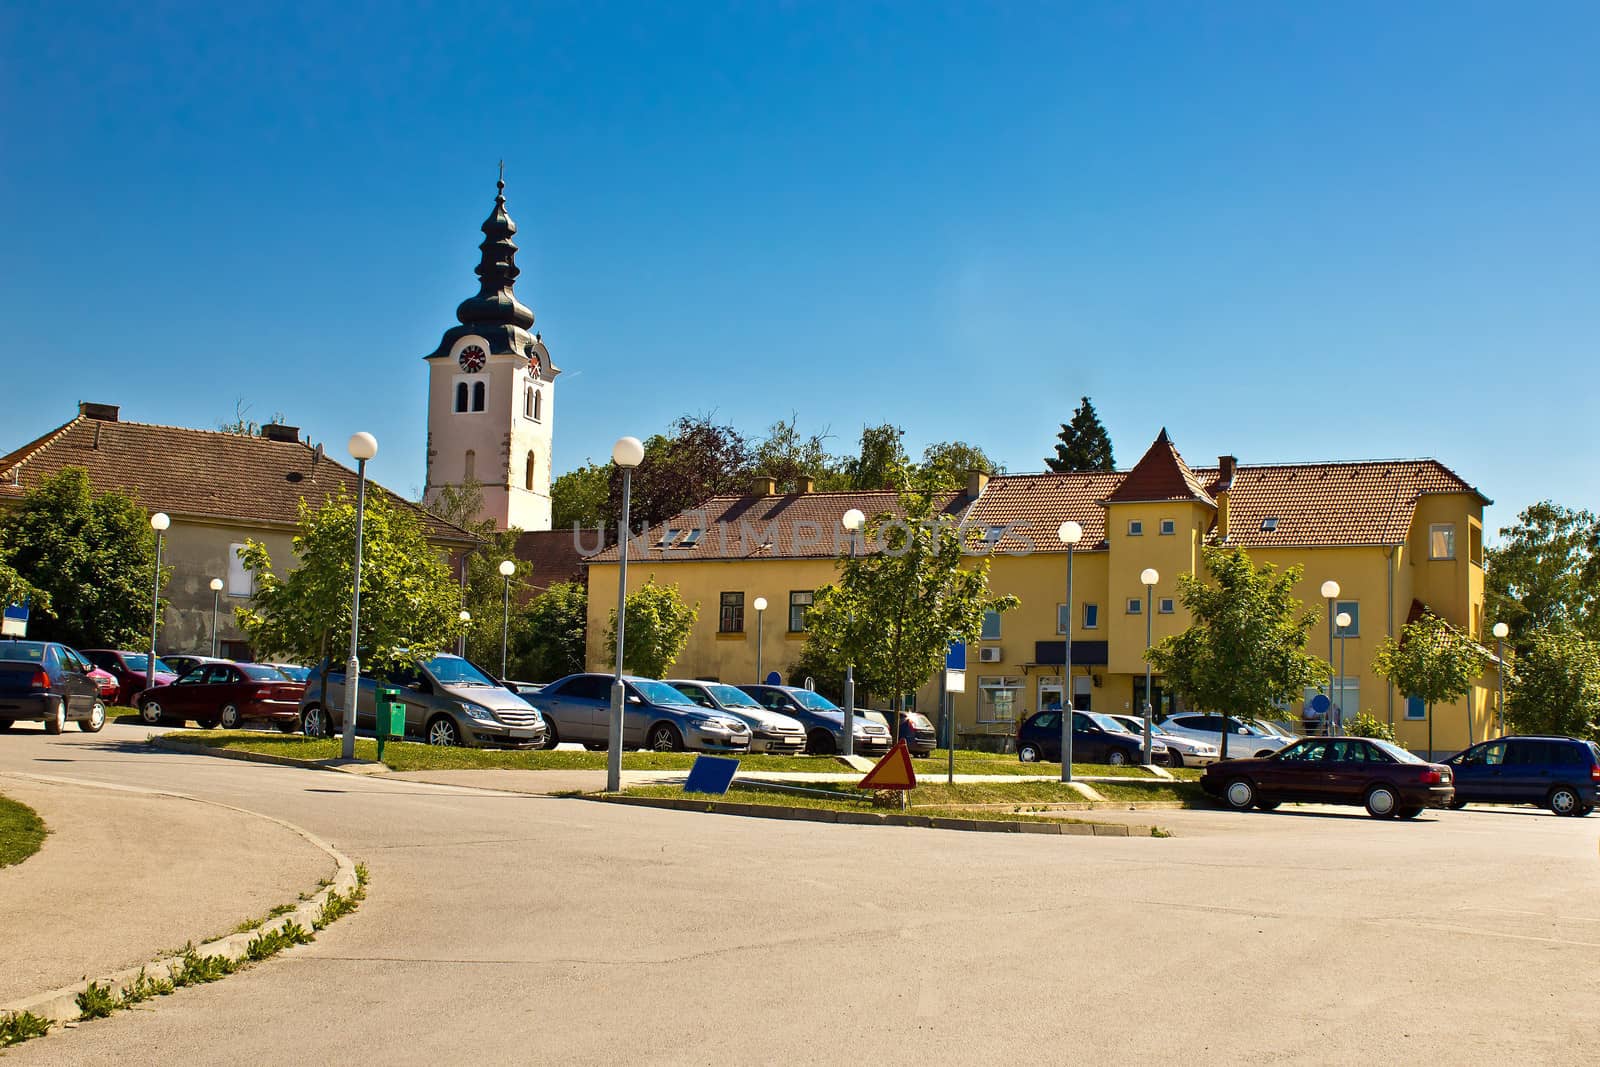 Town of Vrbovec in Croatia, region of Prigorje